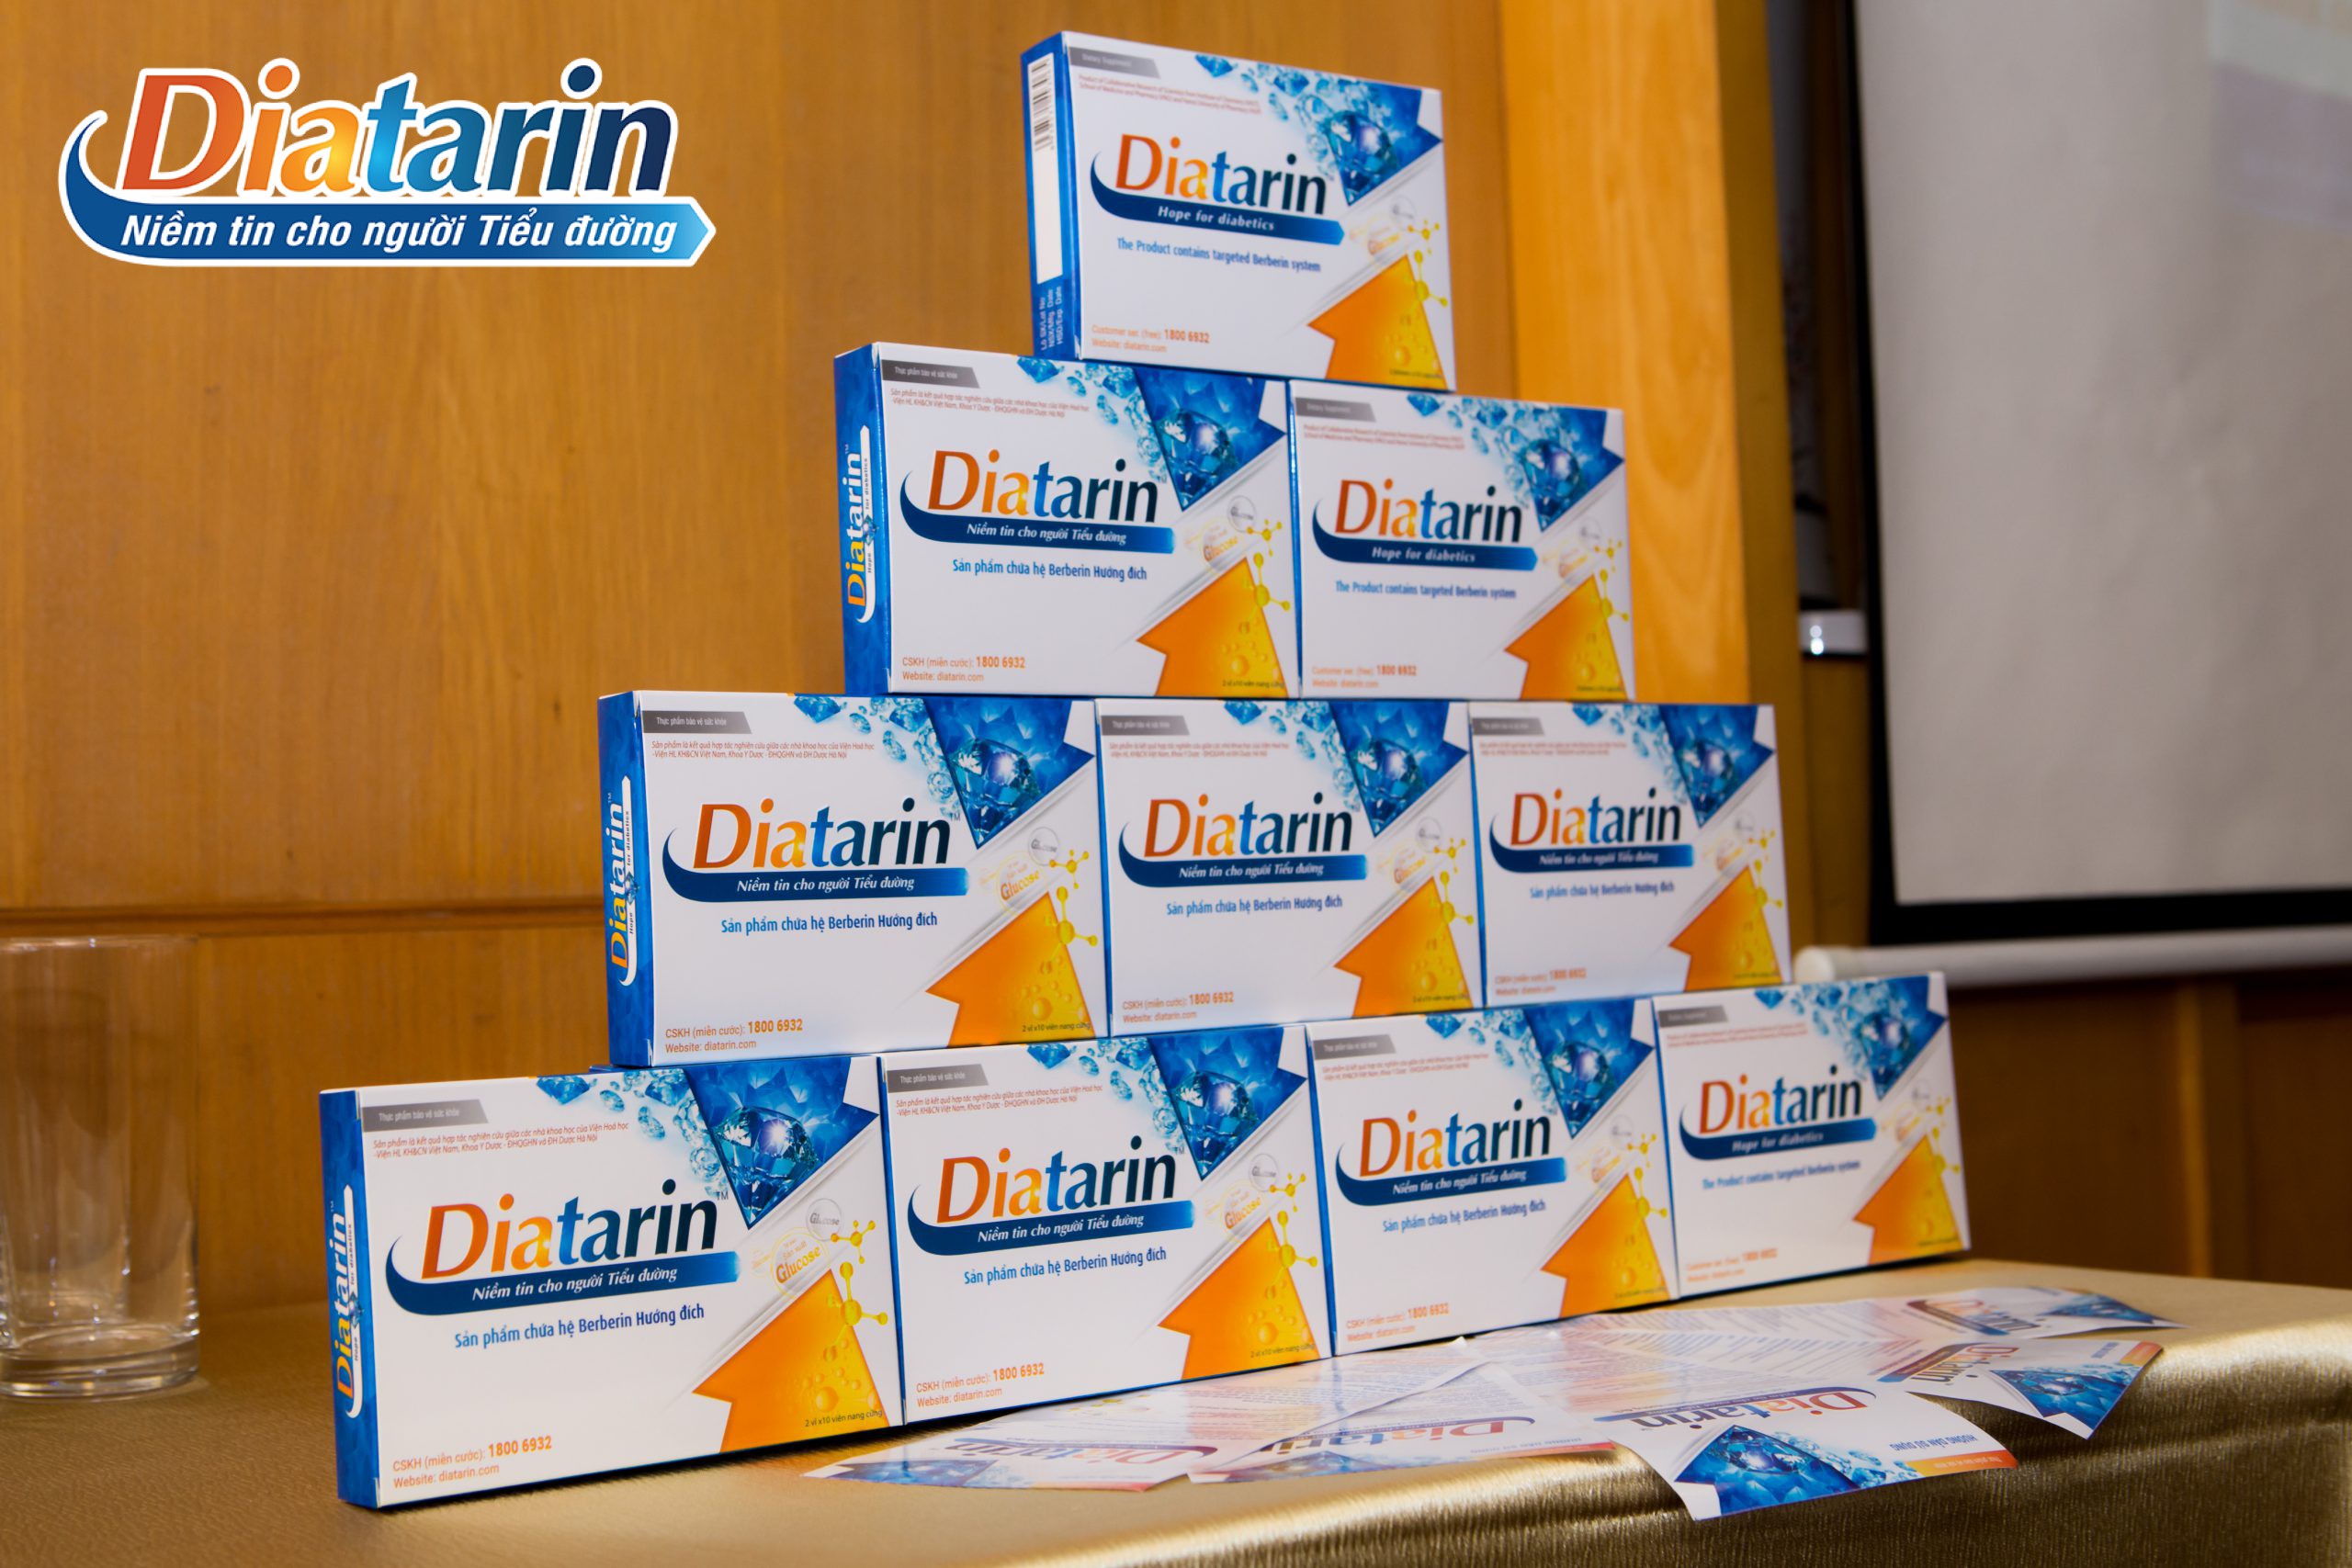 Diatarin là thành quả nghiên cứu của các nhà khoa học sử dụng nano berberin và công nghệ hướng đích 